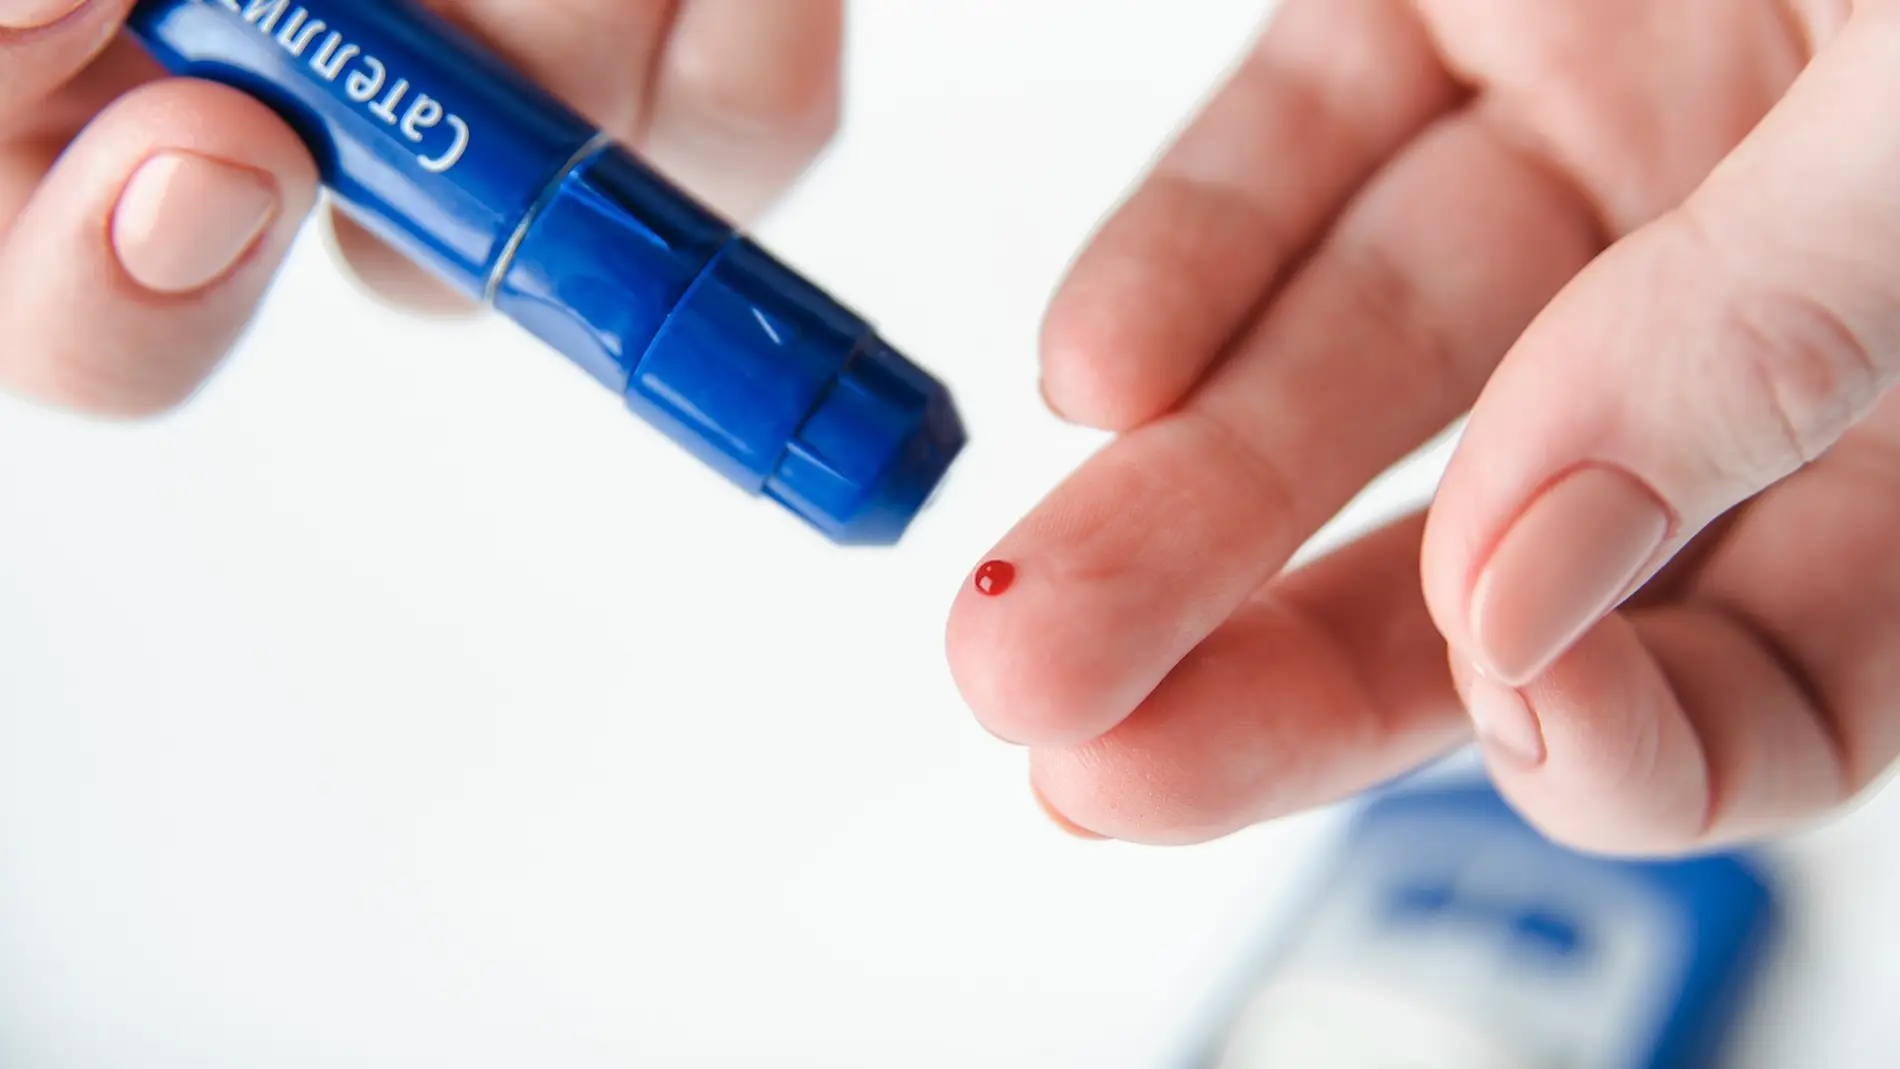 Descubren cómo medir la glucosa sin sacar sangre a los pacientes